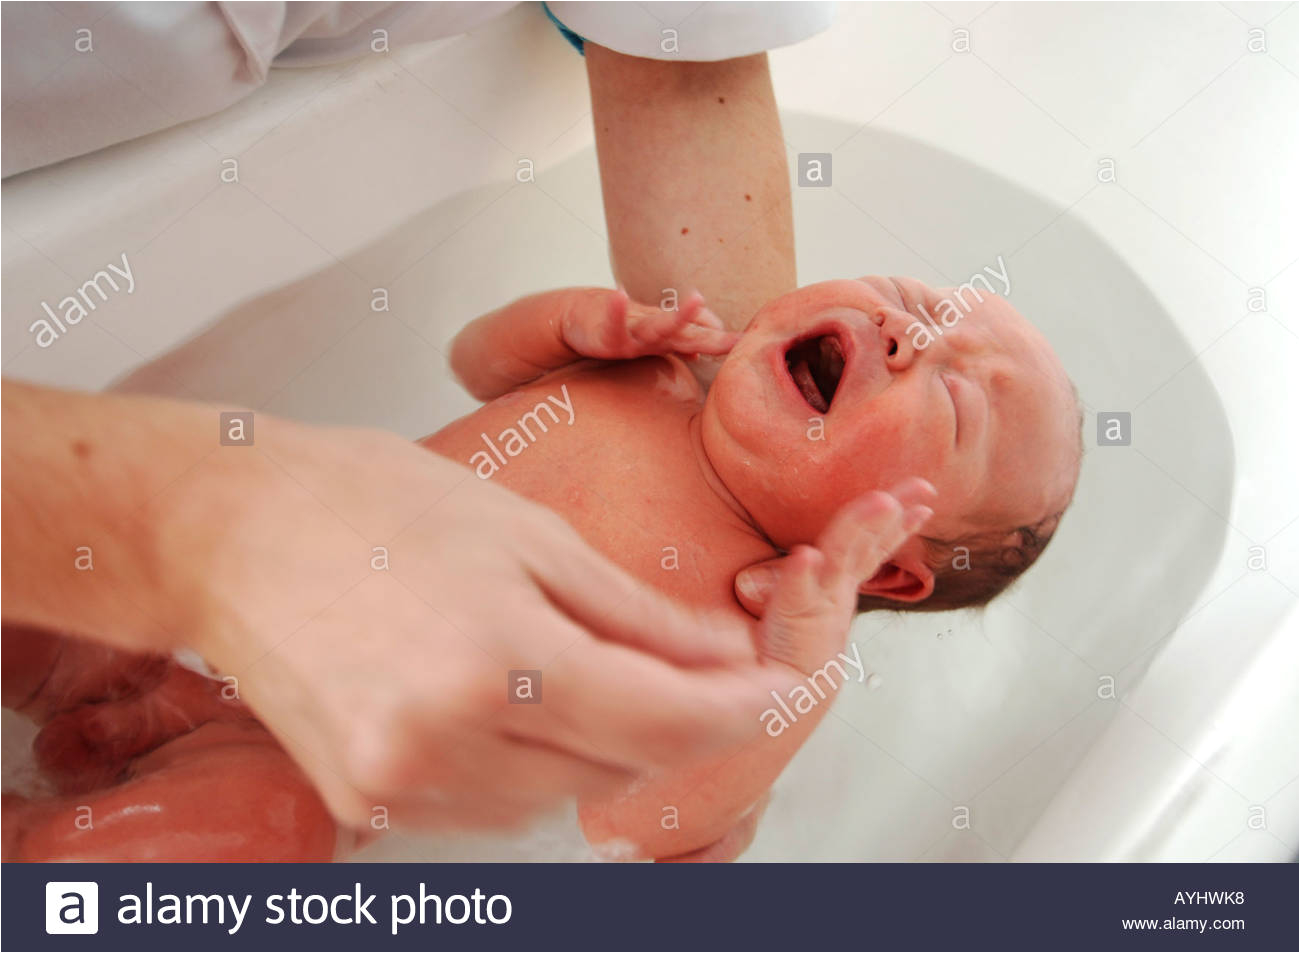 Baby Boy Bathtubs Crying Newborn One Day Old Baby Boy Having His First Bath